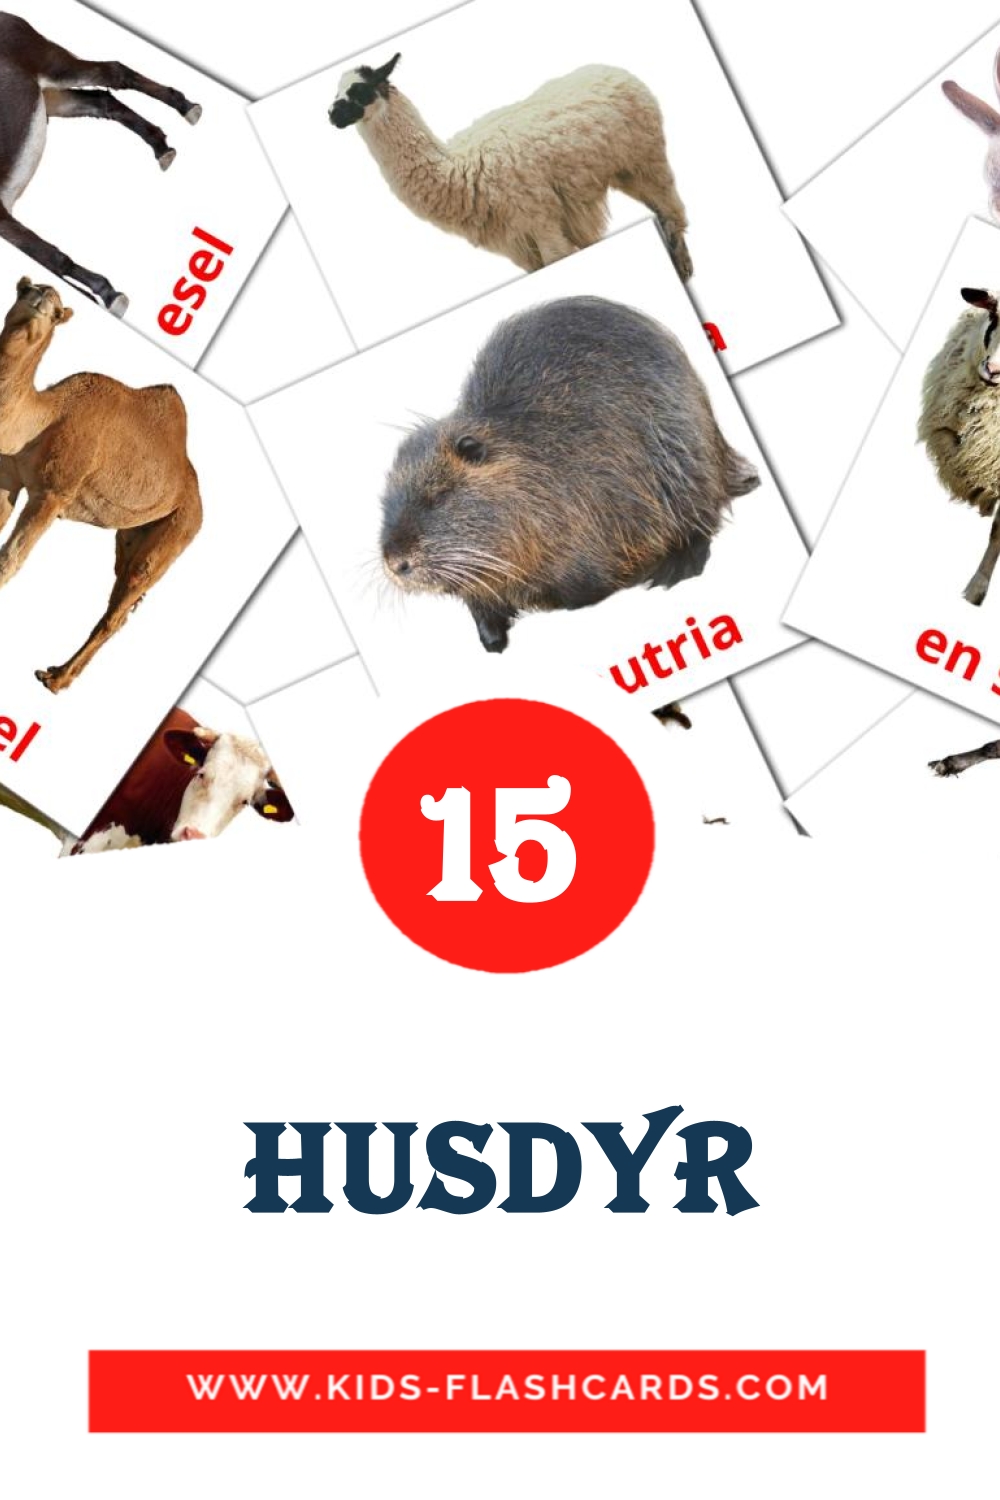 15 husdyr Bildkarten für den Kindergarten auf Norwegisch